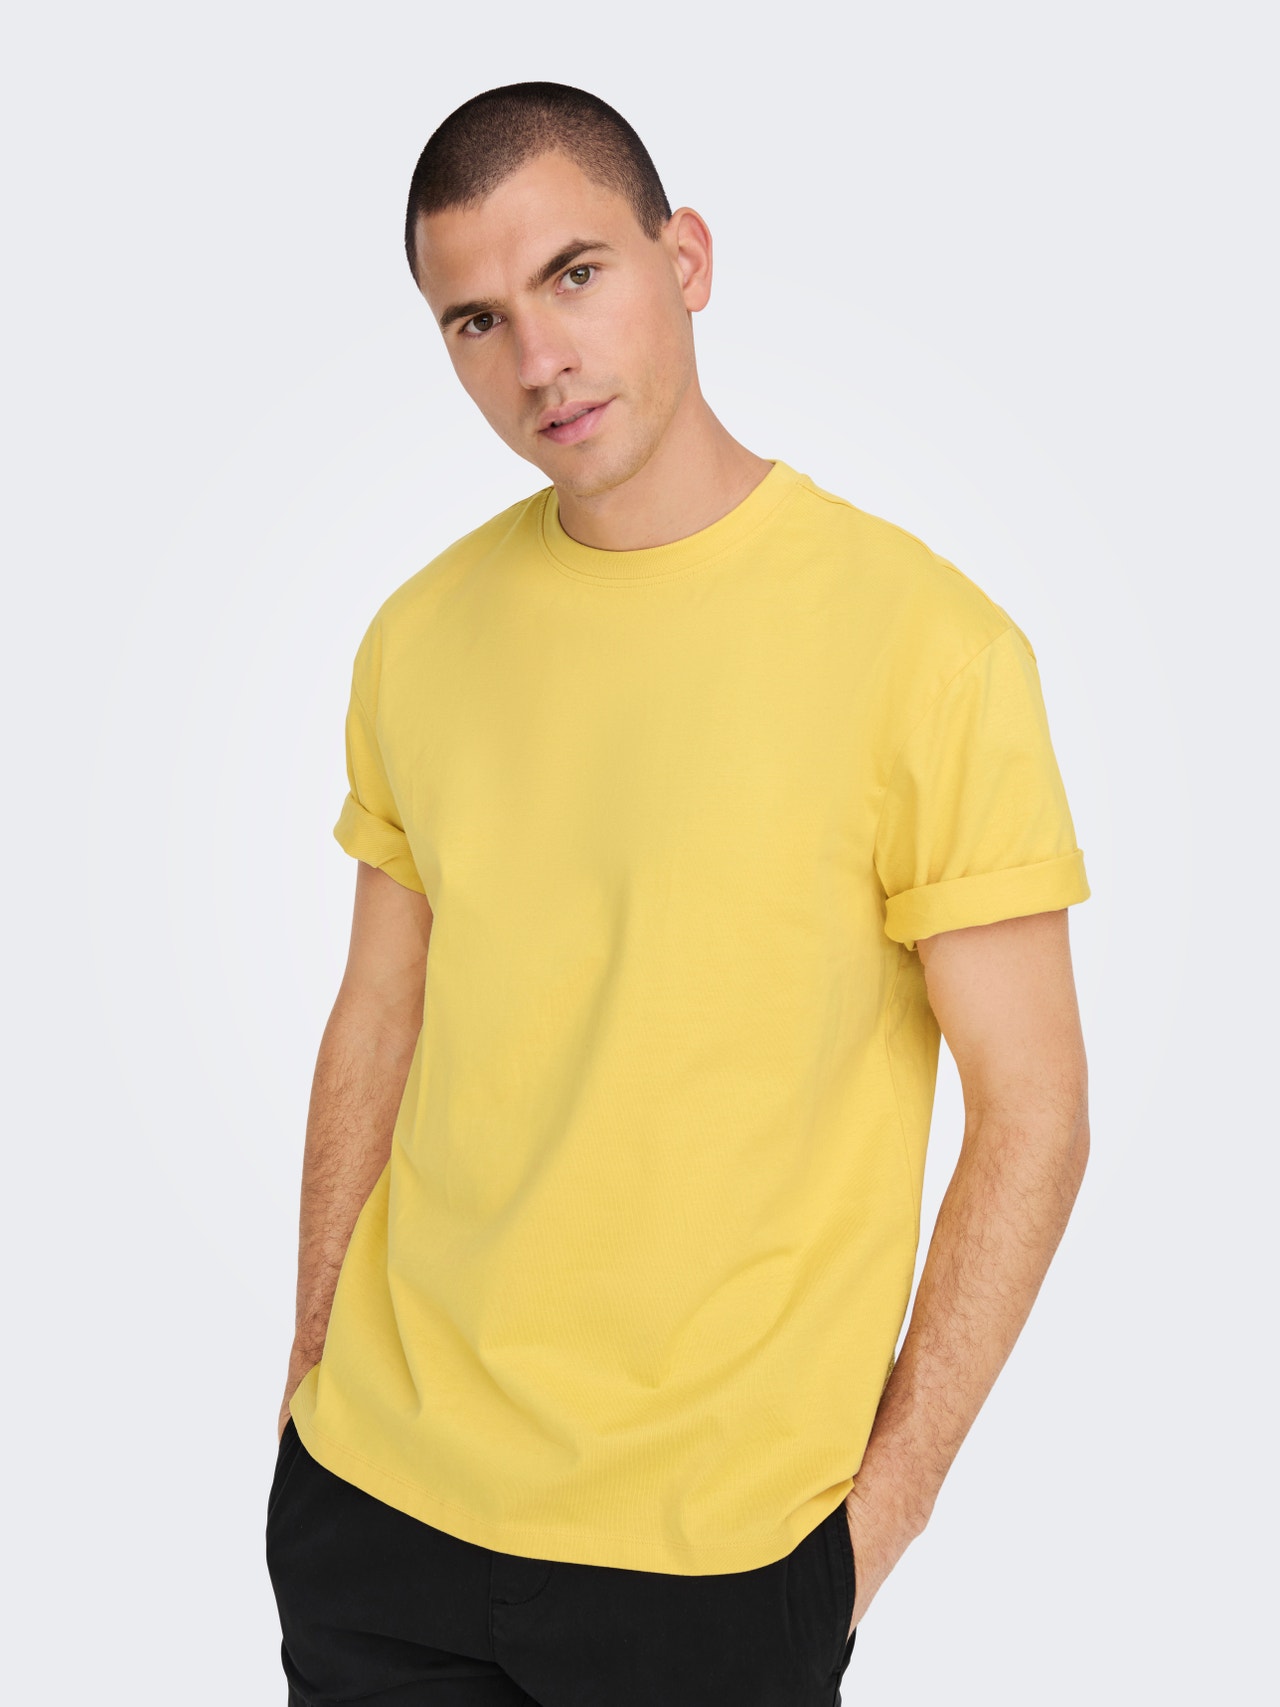 Yellow Ochre Mustard Yellow Round Neck T-shirt